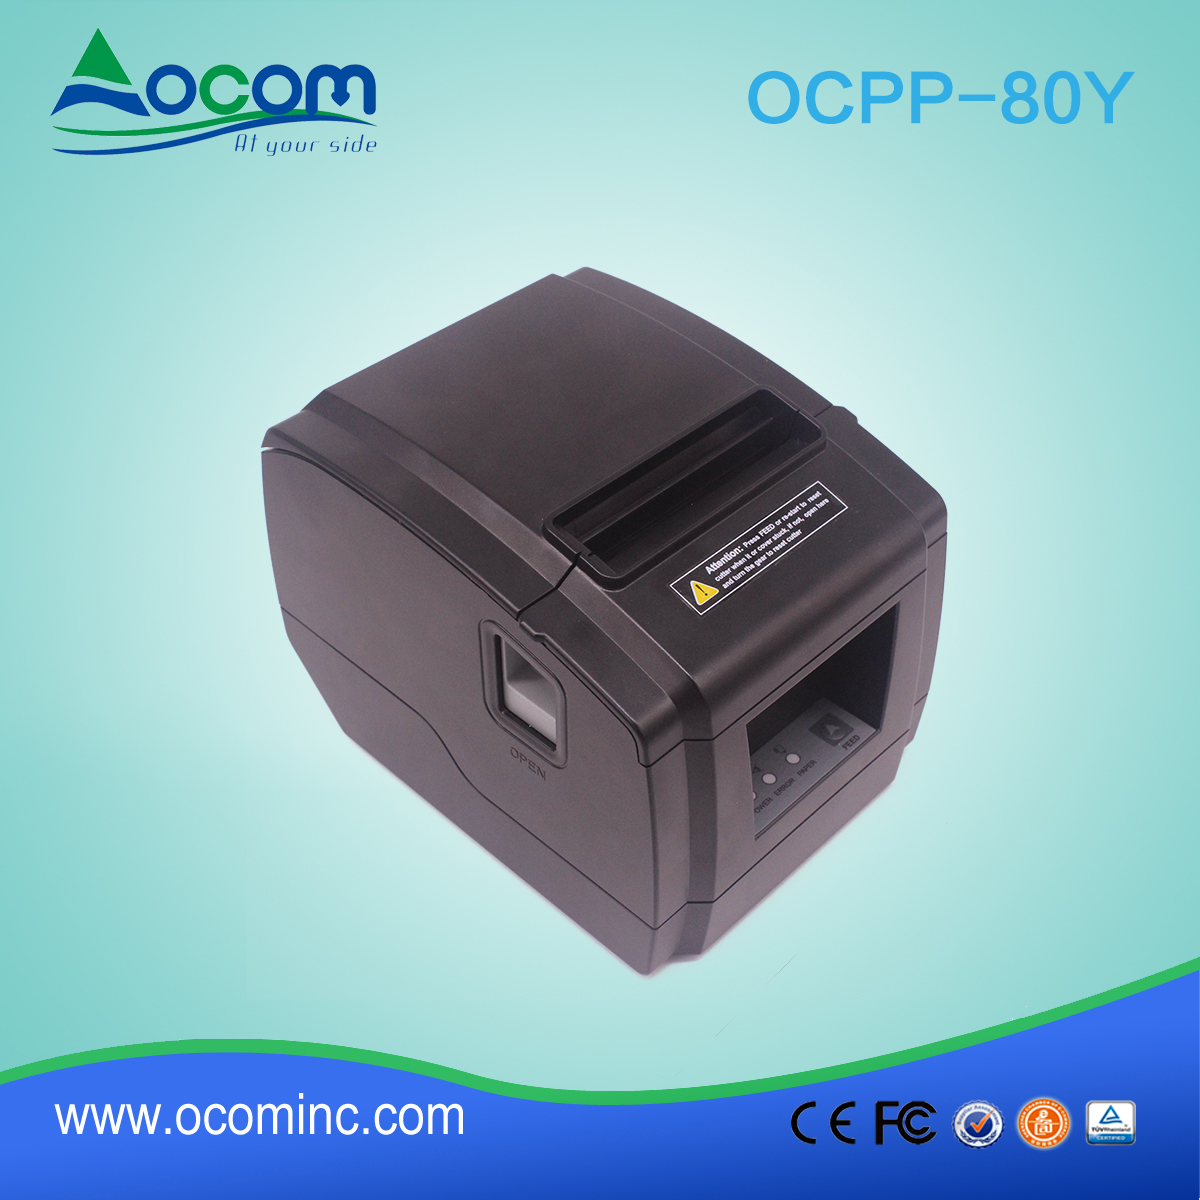 OCPP-80Y-low cost impresora de recibos térmica de 80 mm para venta al por mayor